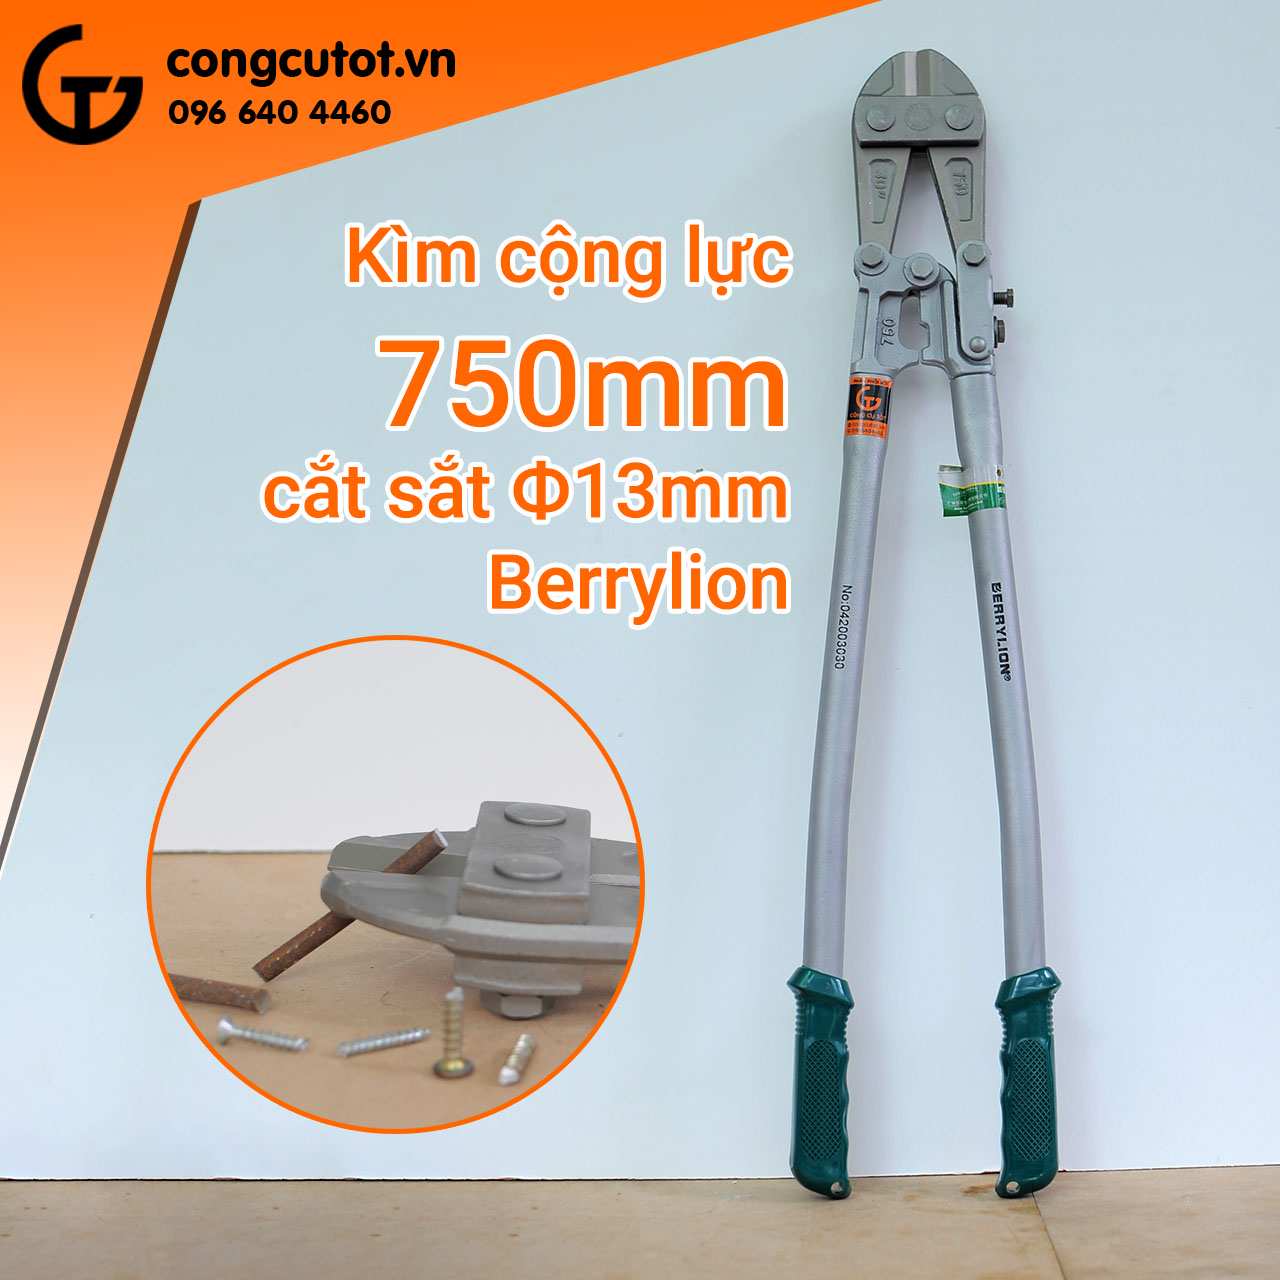 Kìm cộng lực Berrylion 30 inch dài 750mm có thể cắt được sắt đường kính đến 13mm